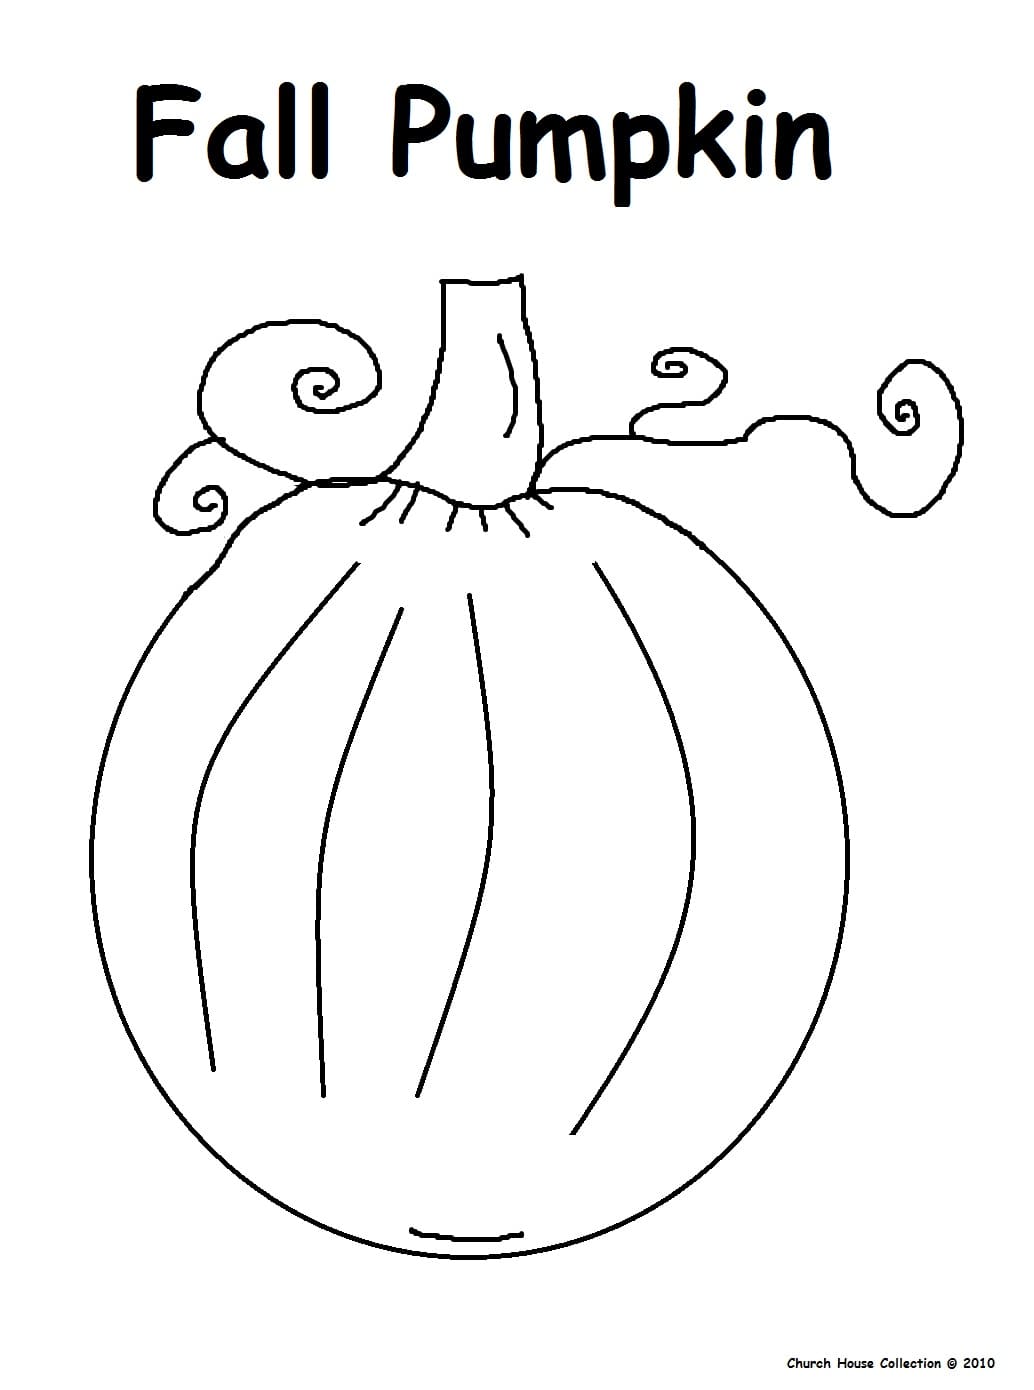 Fall Pumpkin For Kids